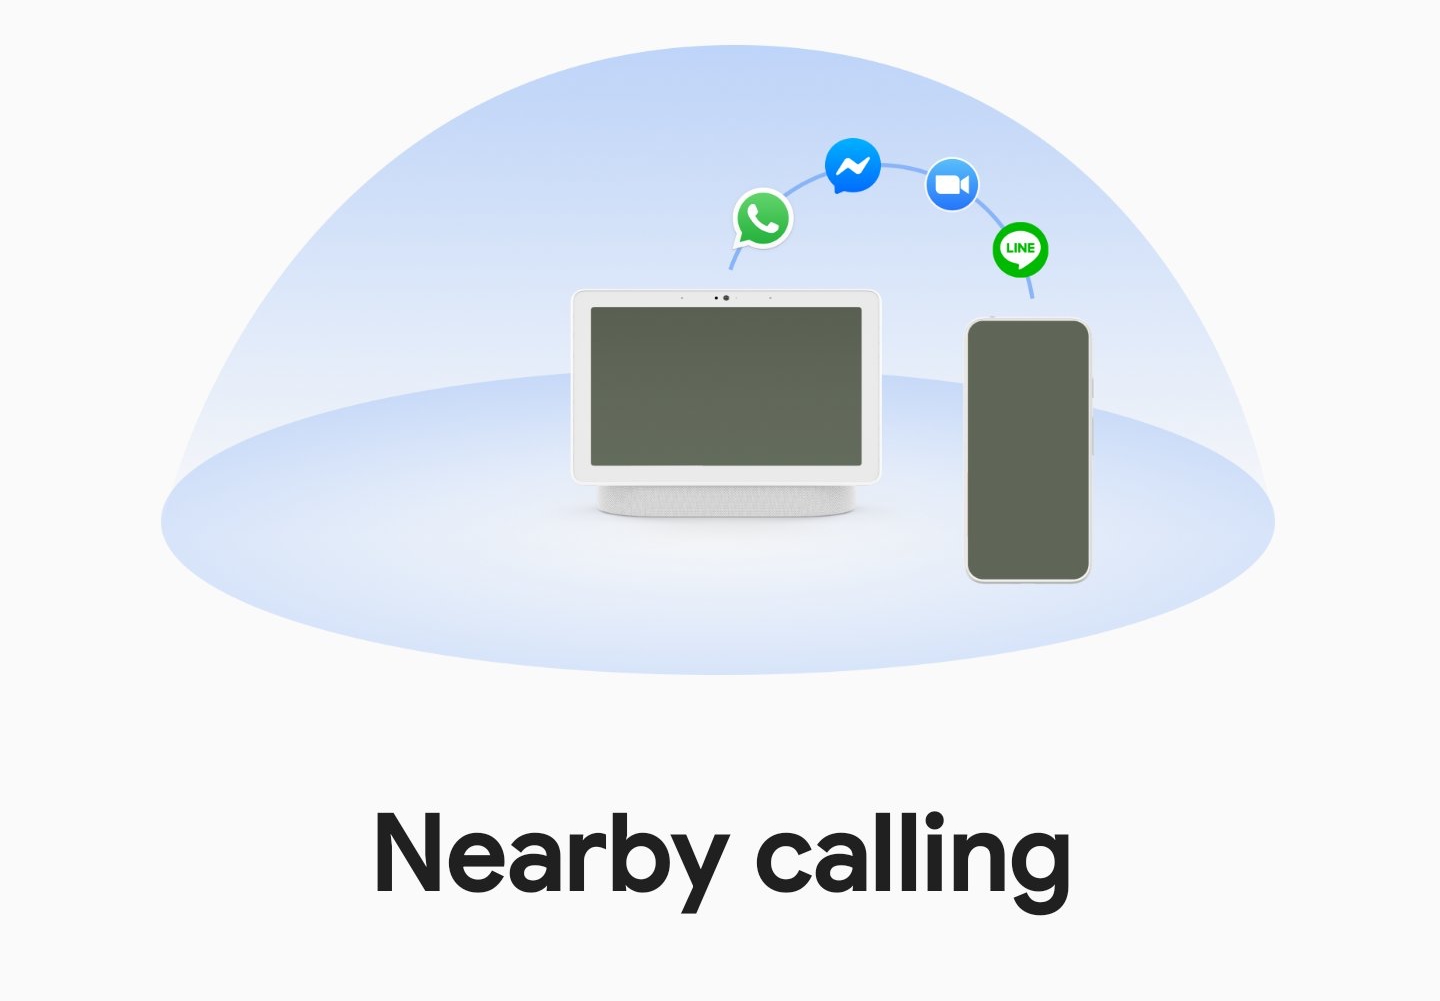 Google sta lavorando su Nearby calling, che permetterà ai proprietari di smartphone Pixel di rispondere alle chiamate dal display intelligente Nest Hub